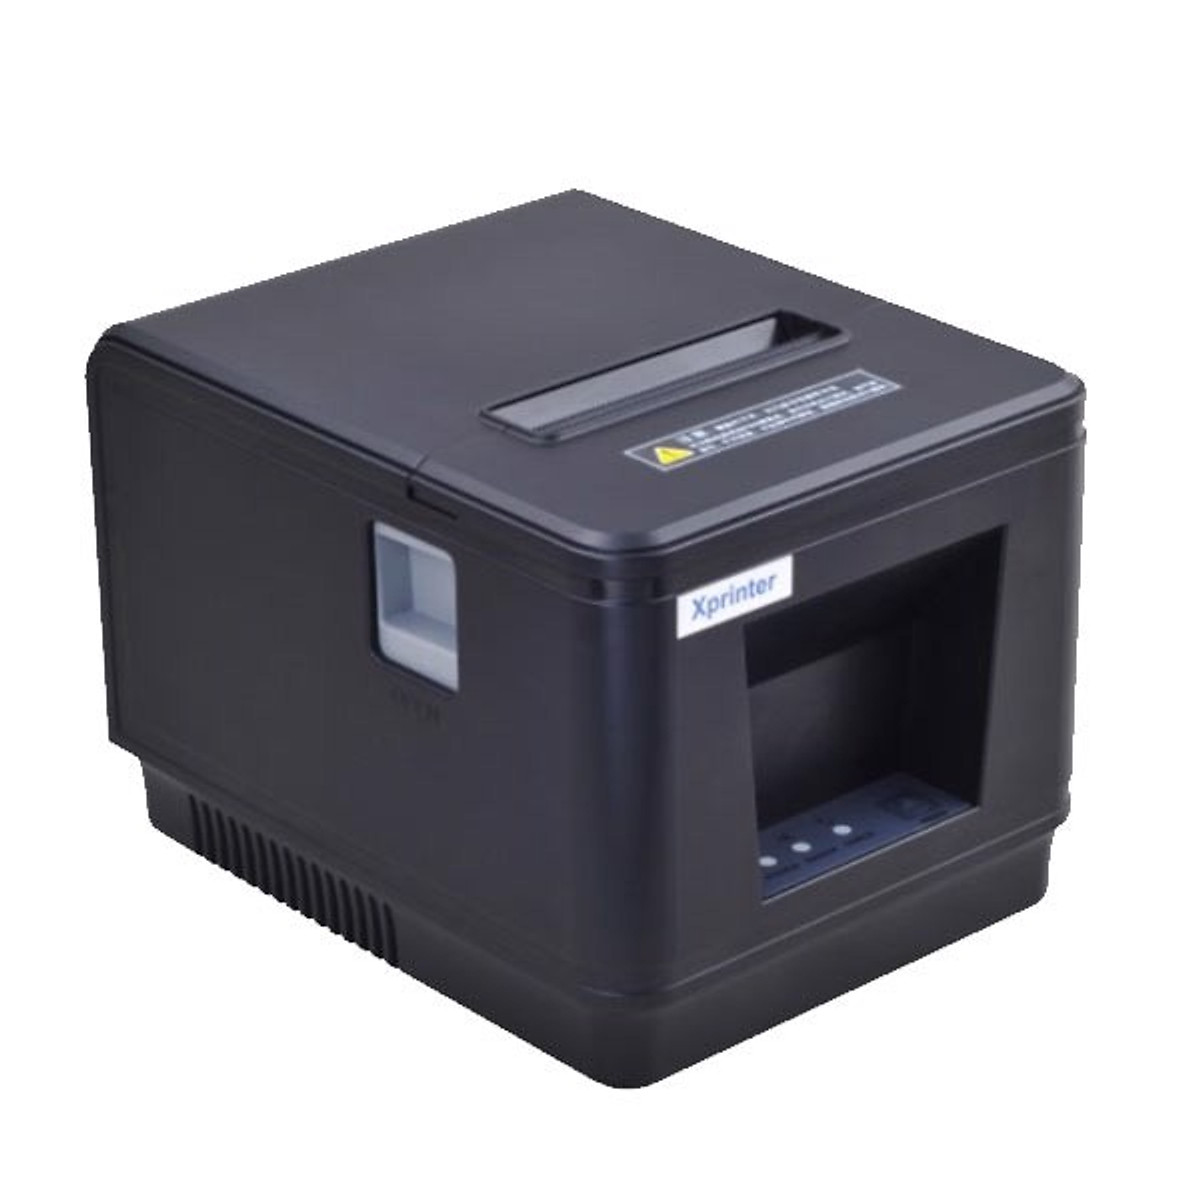 Máy in hóa đơn Xprinter A160H - Lan/USB tùy chọn cổng kết nối USB hoặc LAN